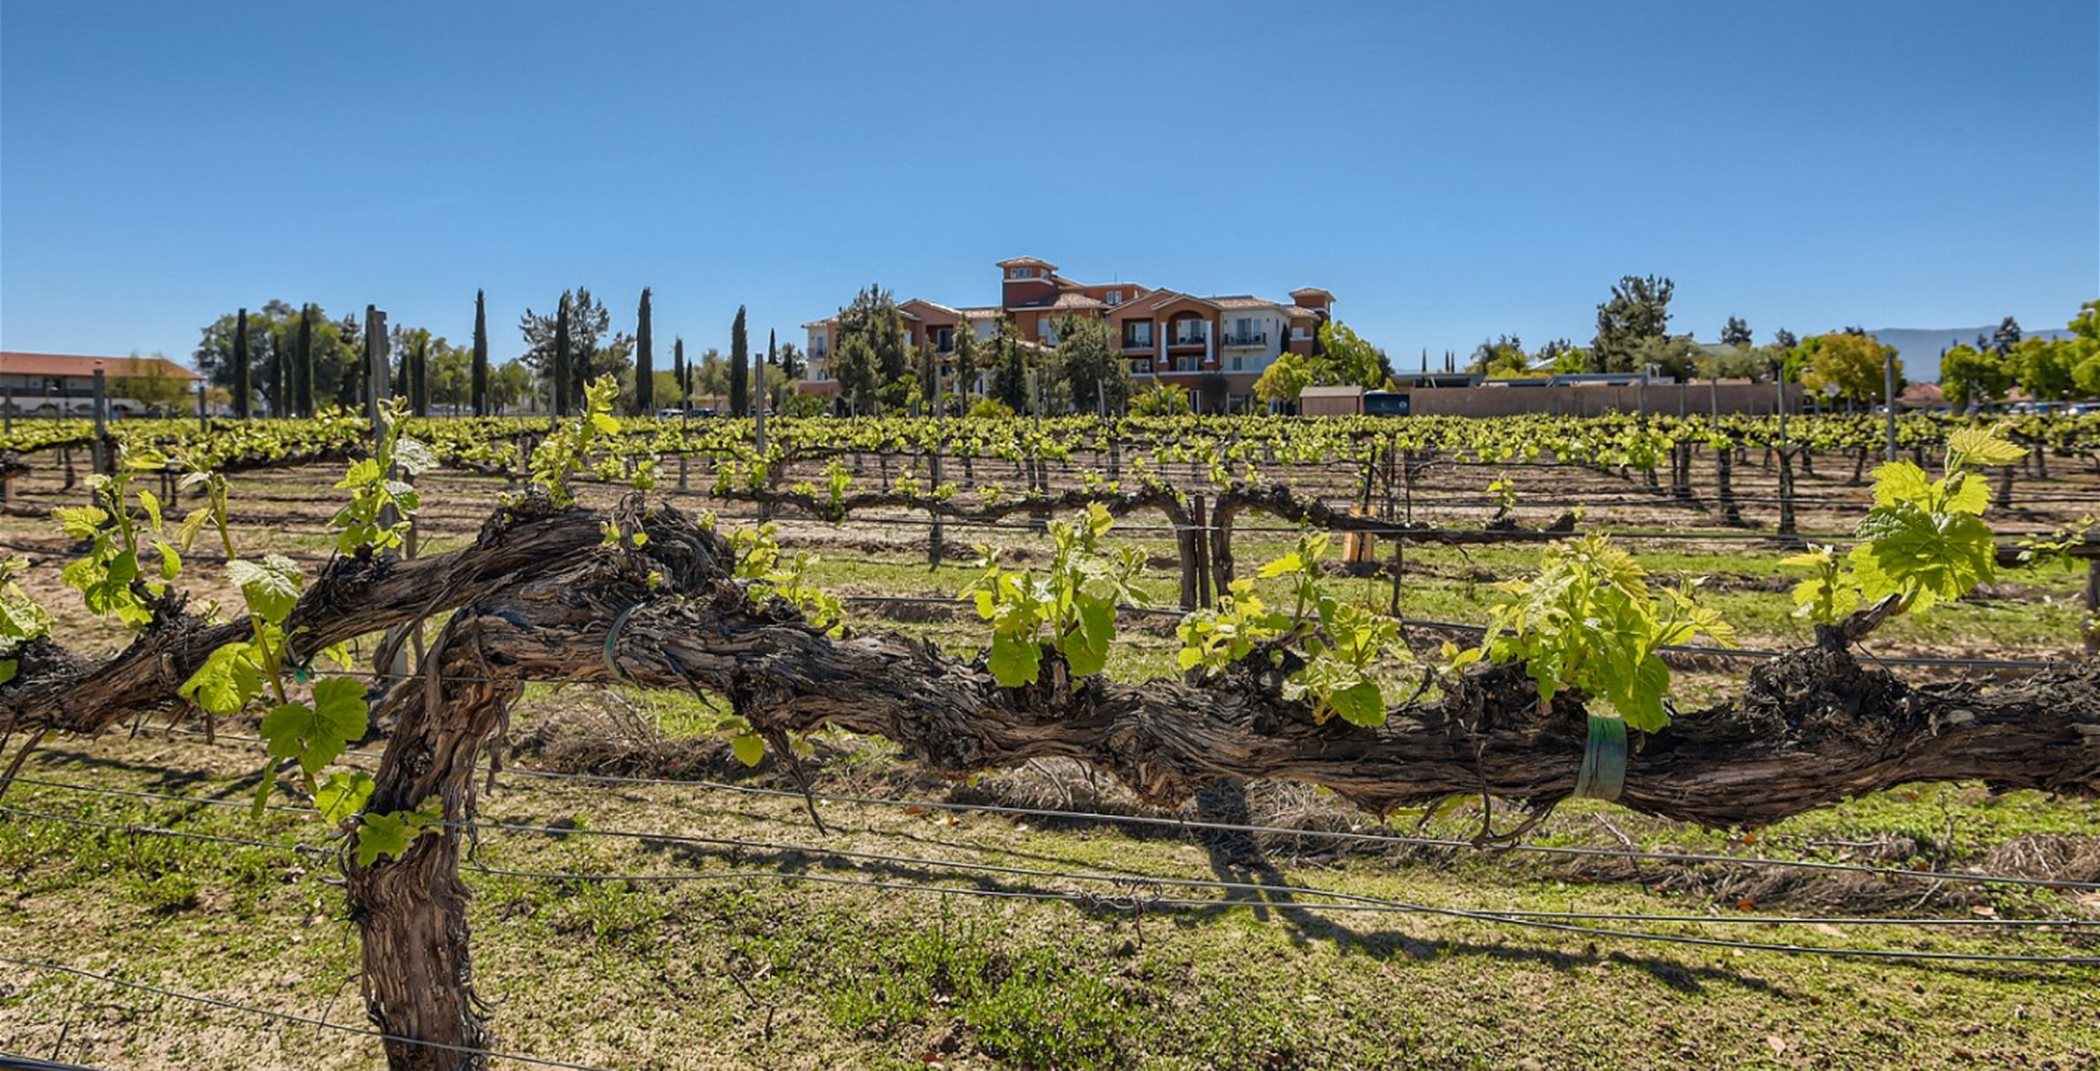 Vineyard at South Coast Winery